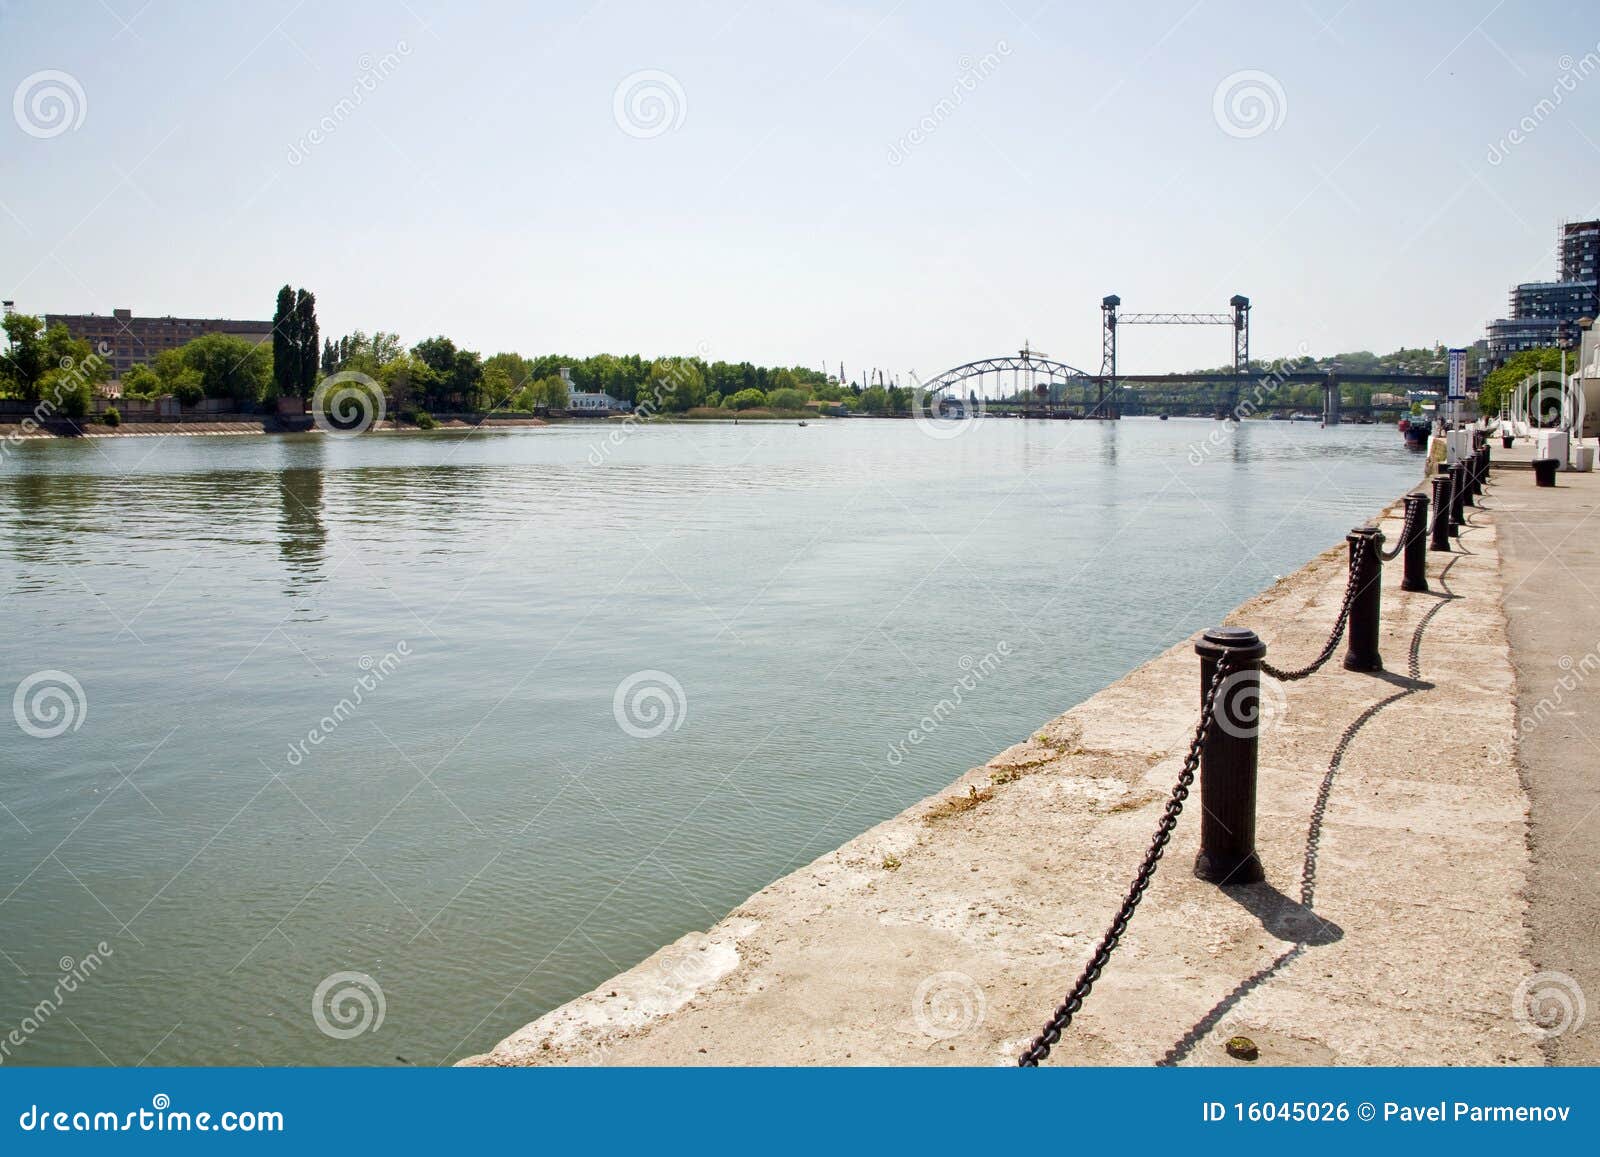 Ciudad y río Don de Rostov-on-Don. Visión urbana. Terraplén en la ciudad de Rostov-on-Don